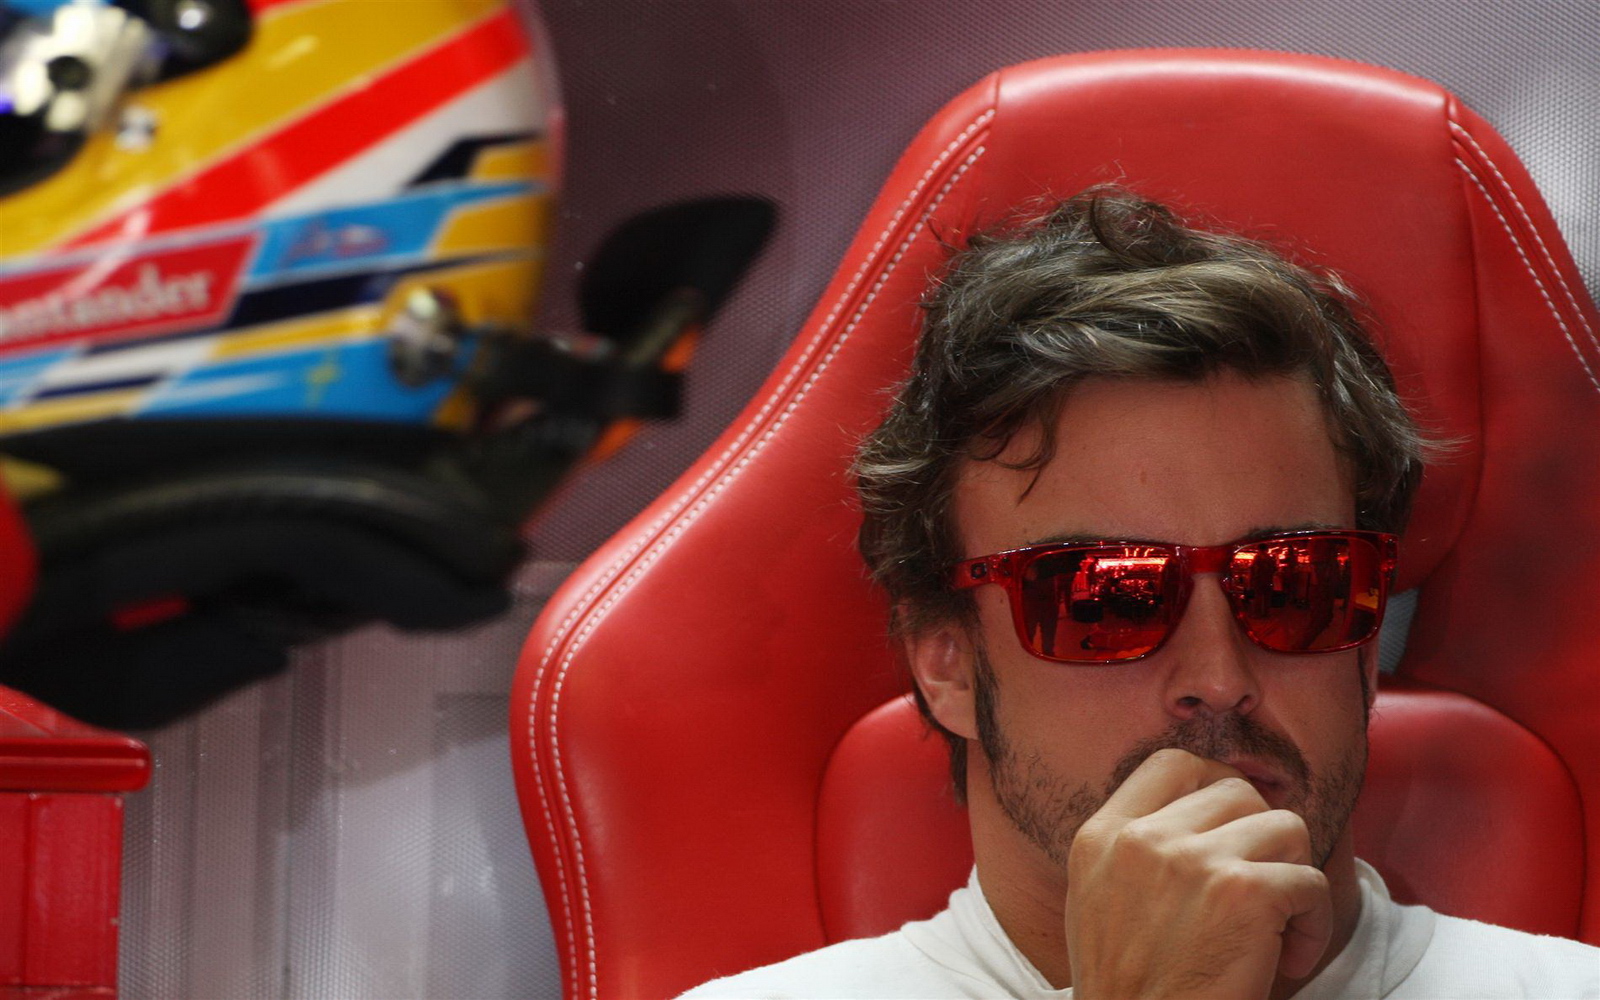 Фернандо алонсо камеди клаб. Фернандо Алонсо отдыхает в кресле. Фернандо Алонсо Гран при Италии 2012 с камерой. Алонсо отдыхает.